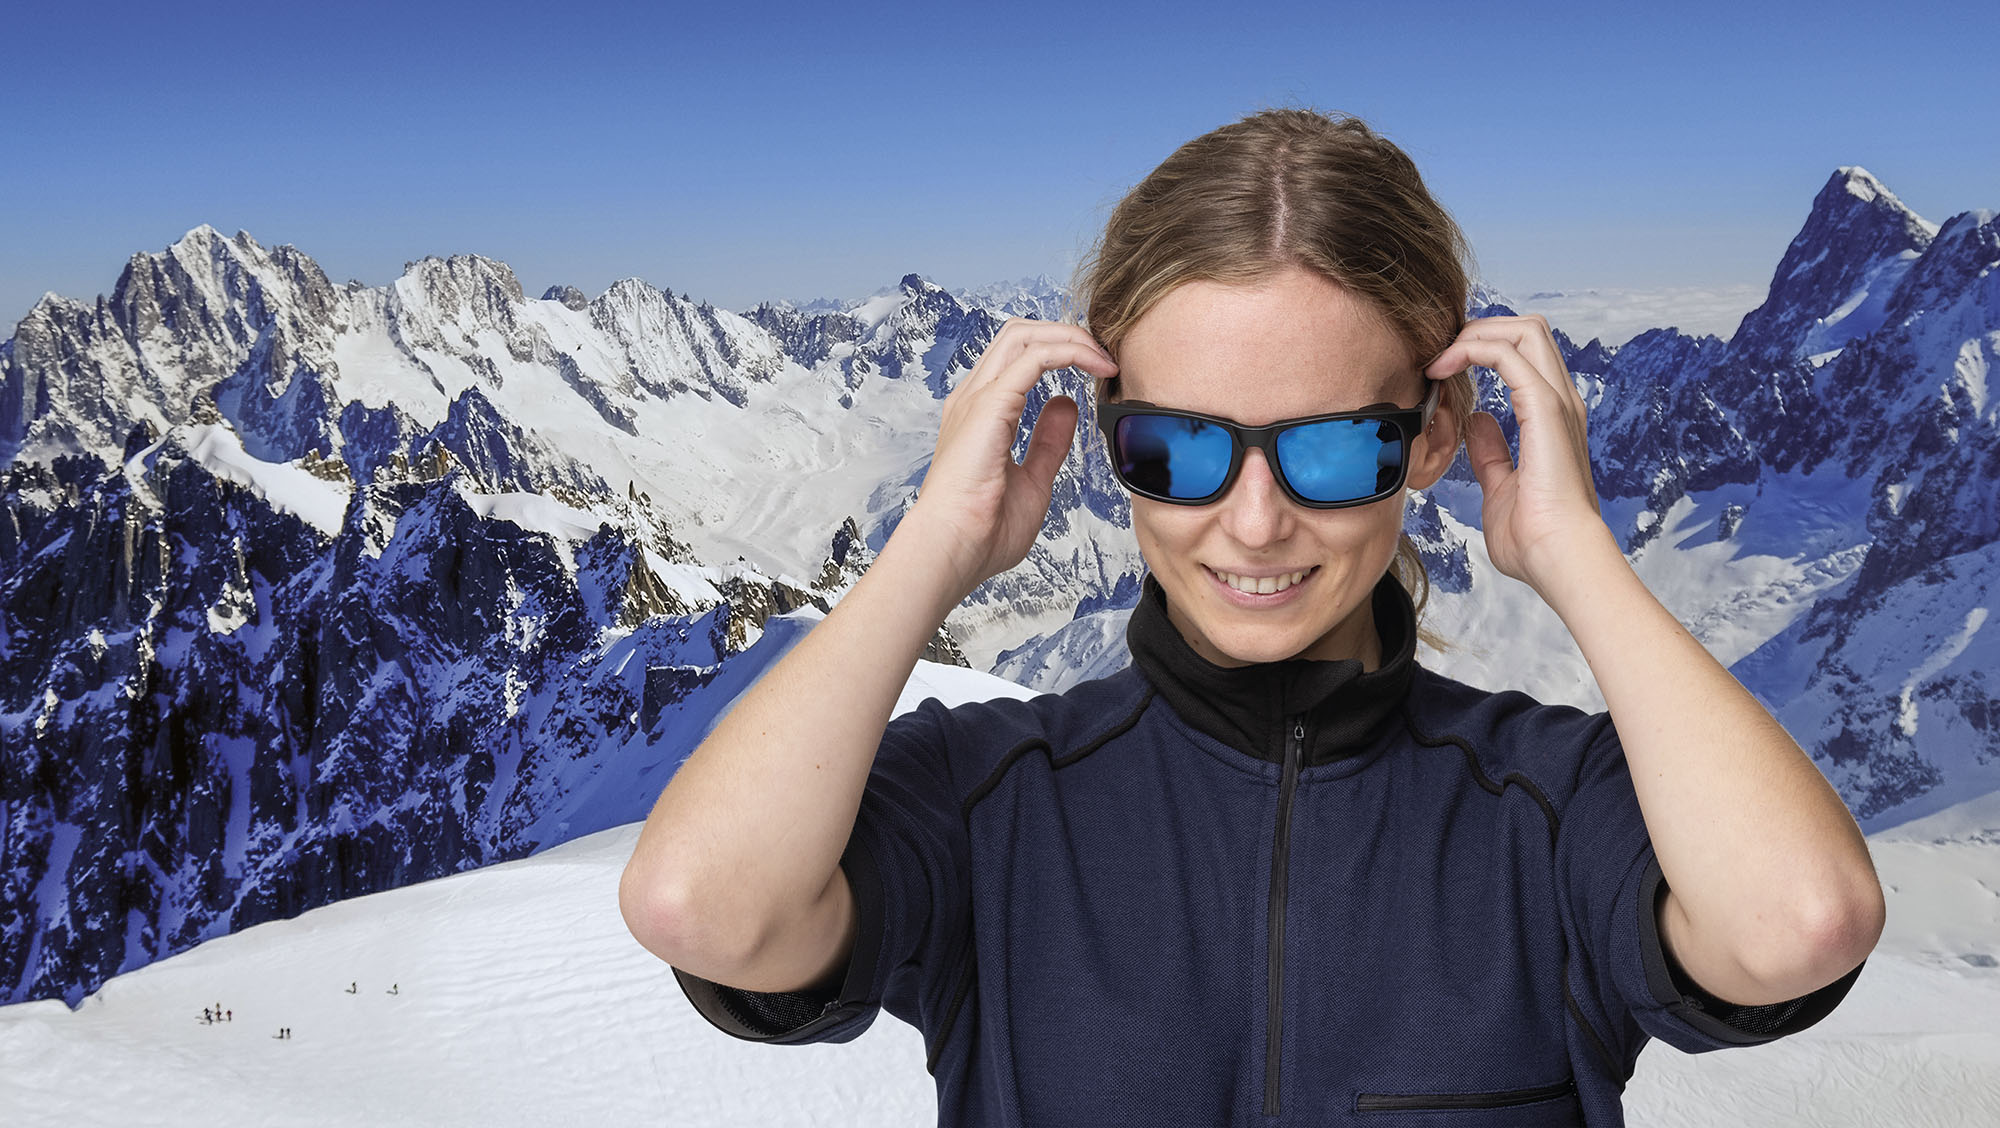 La protección solar para los ojos más adecuada en la nieve